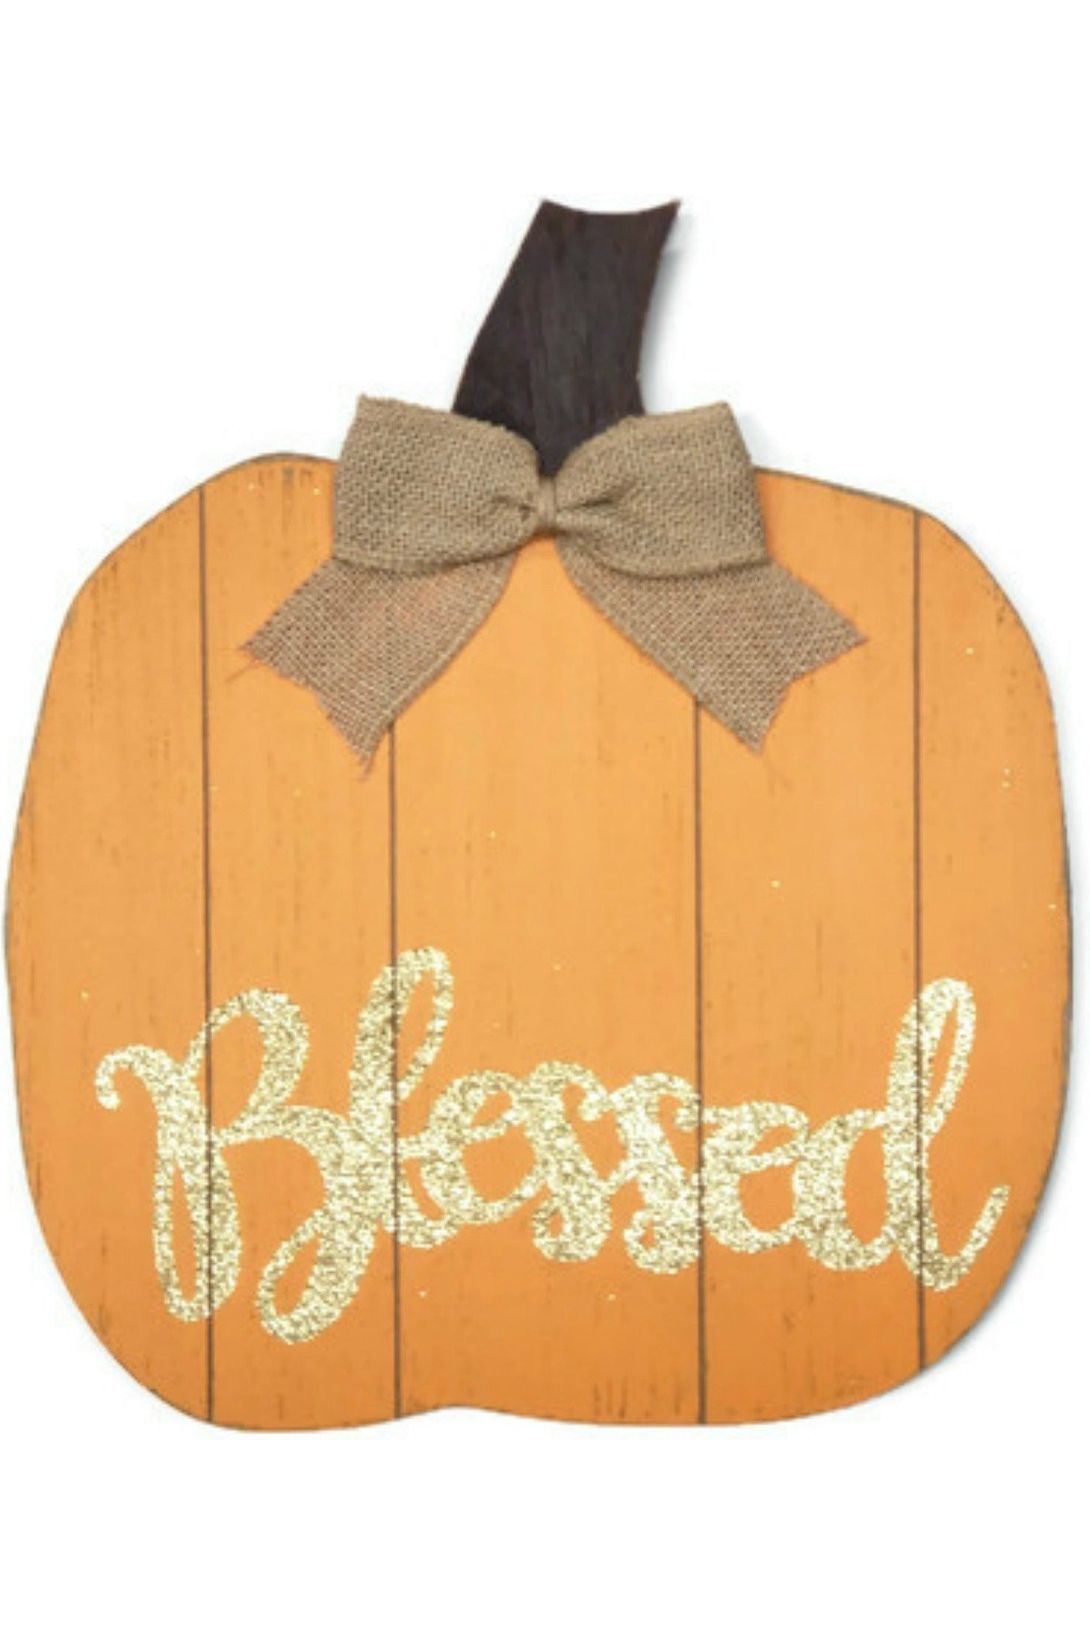 Shop For 15" Blessed Wood Pumpkin Sign: Orange H8239